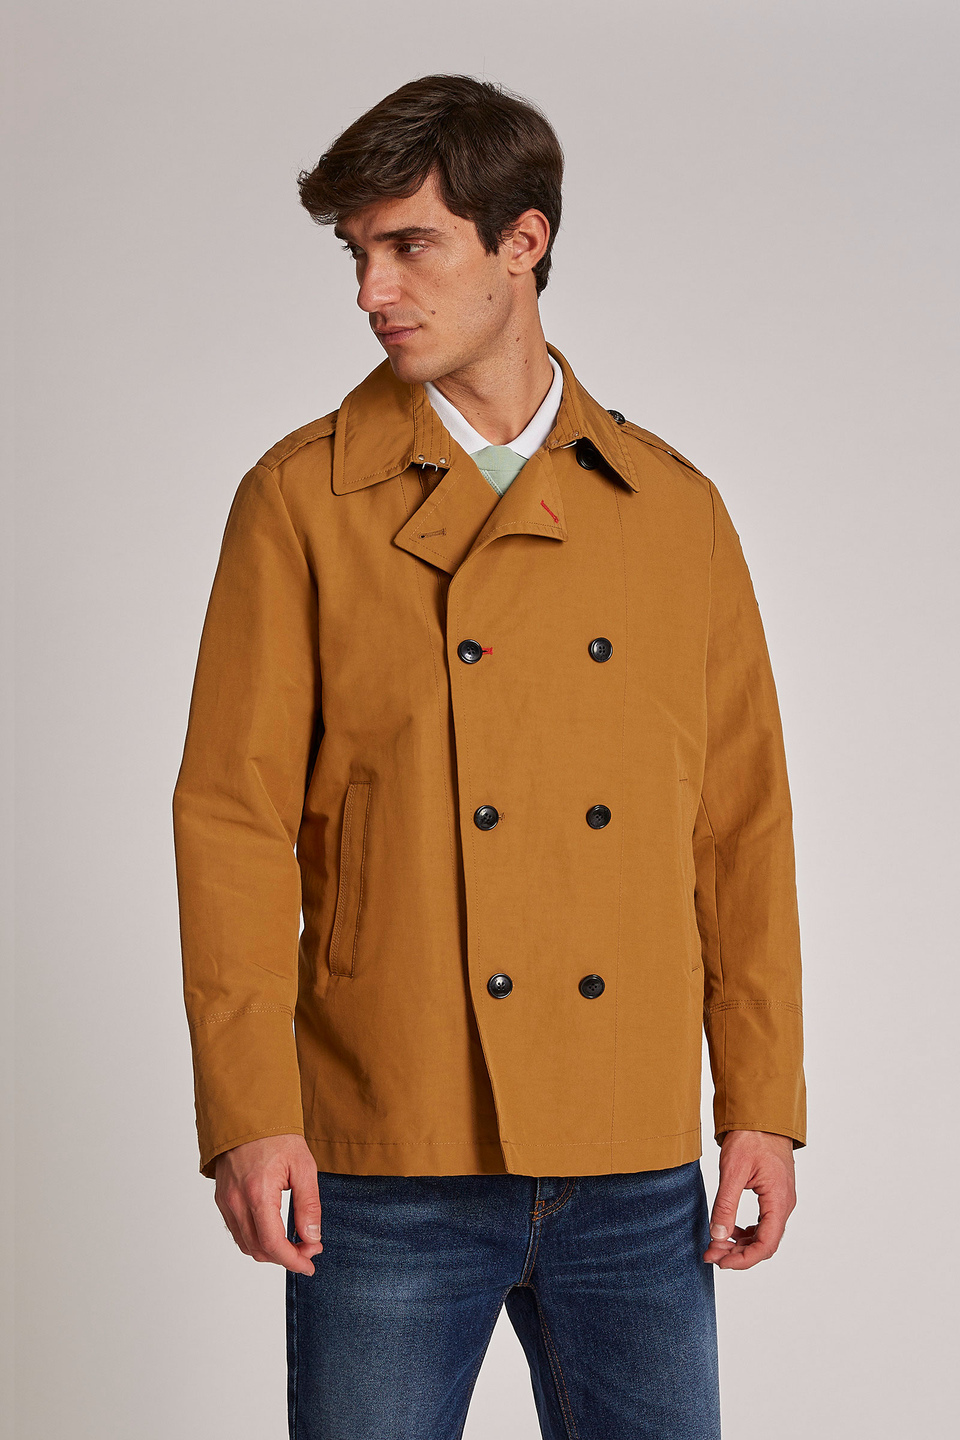 Men's long-sleeved regular-fit double-breasted jacket | La Martina - Official Online Shop